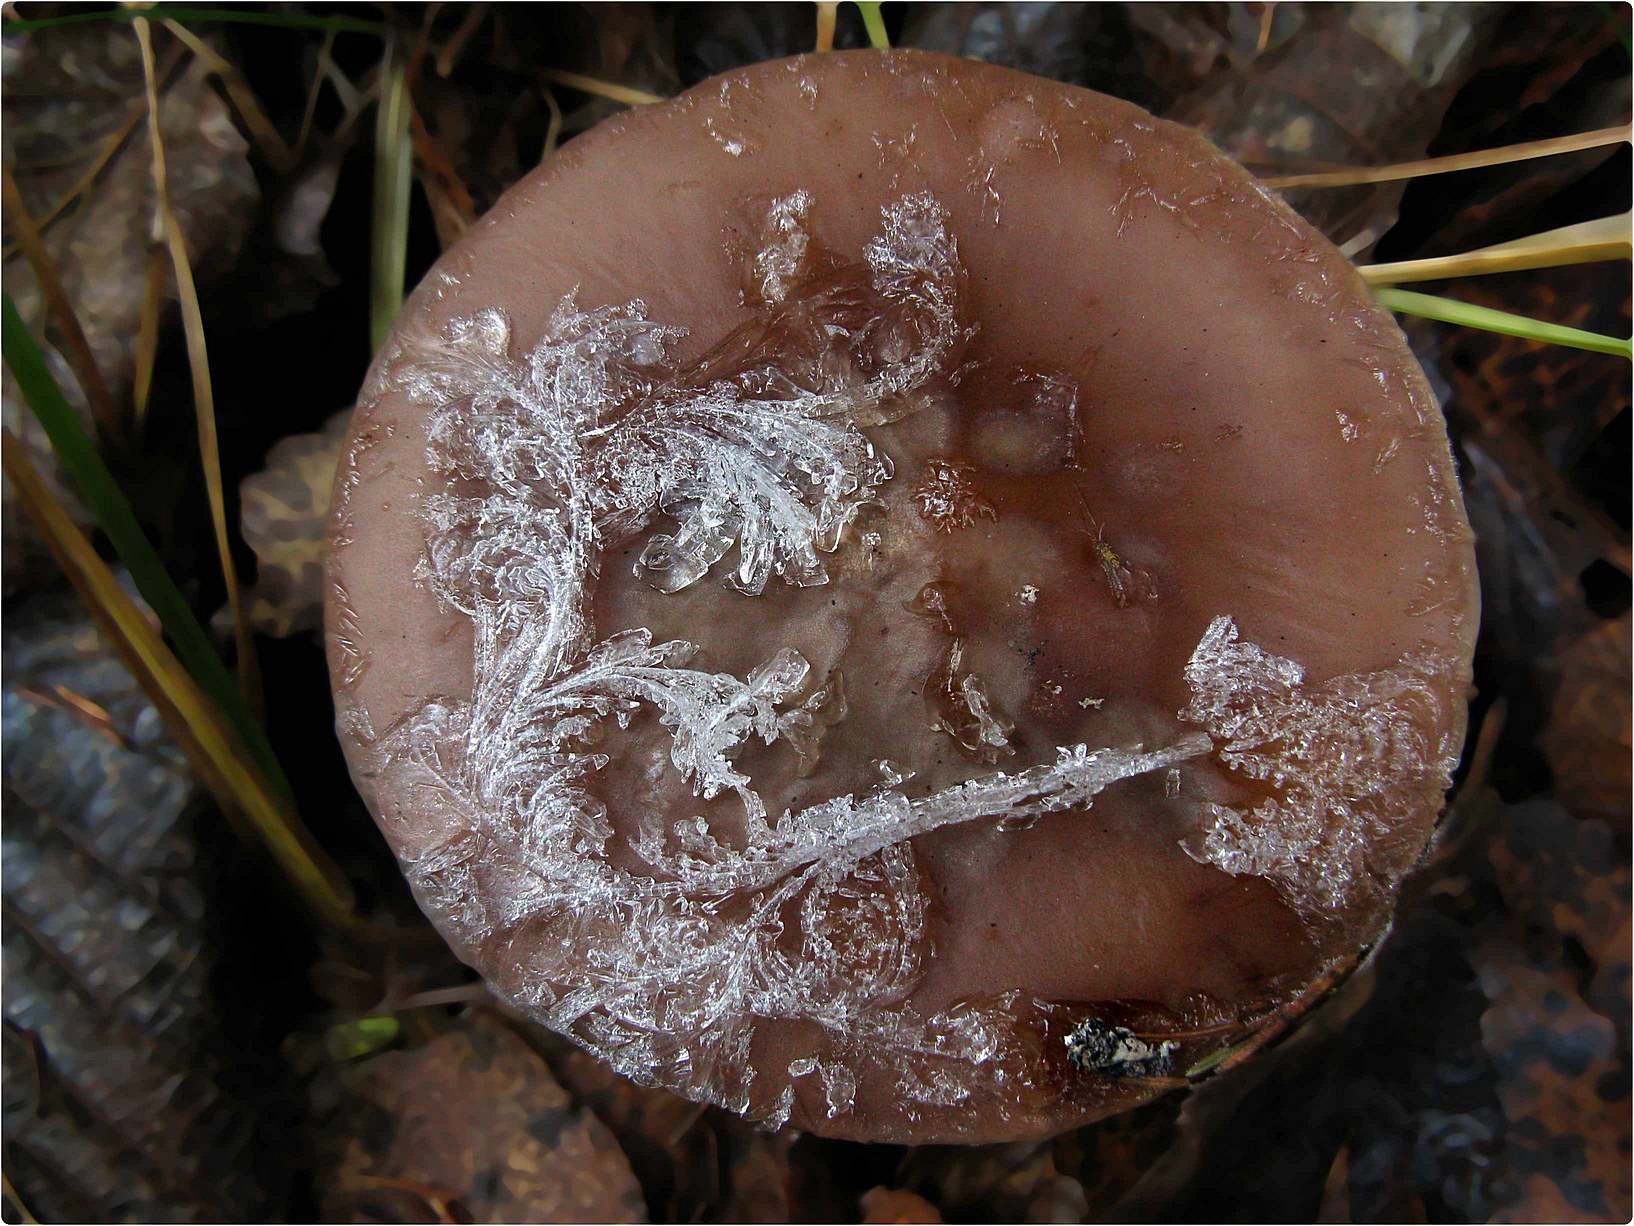 Дождь сменился утренним морозцем - и грибы стали похожи на расписные шкатулки. Автор фото: Кудрявцева Татьяна